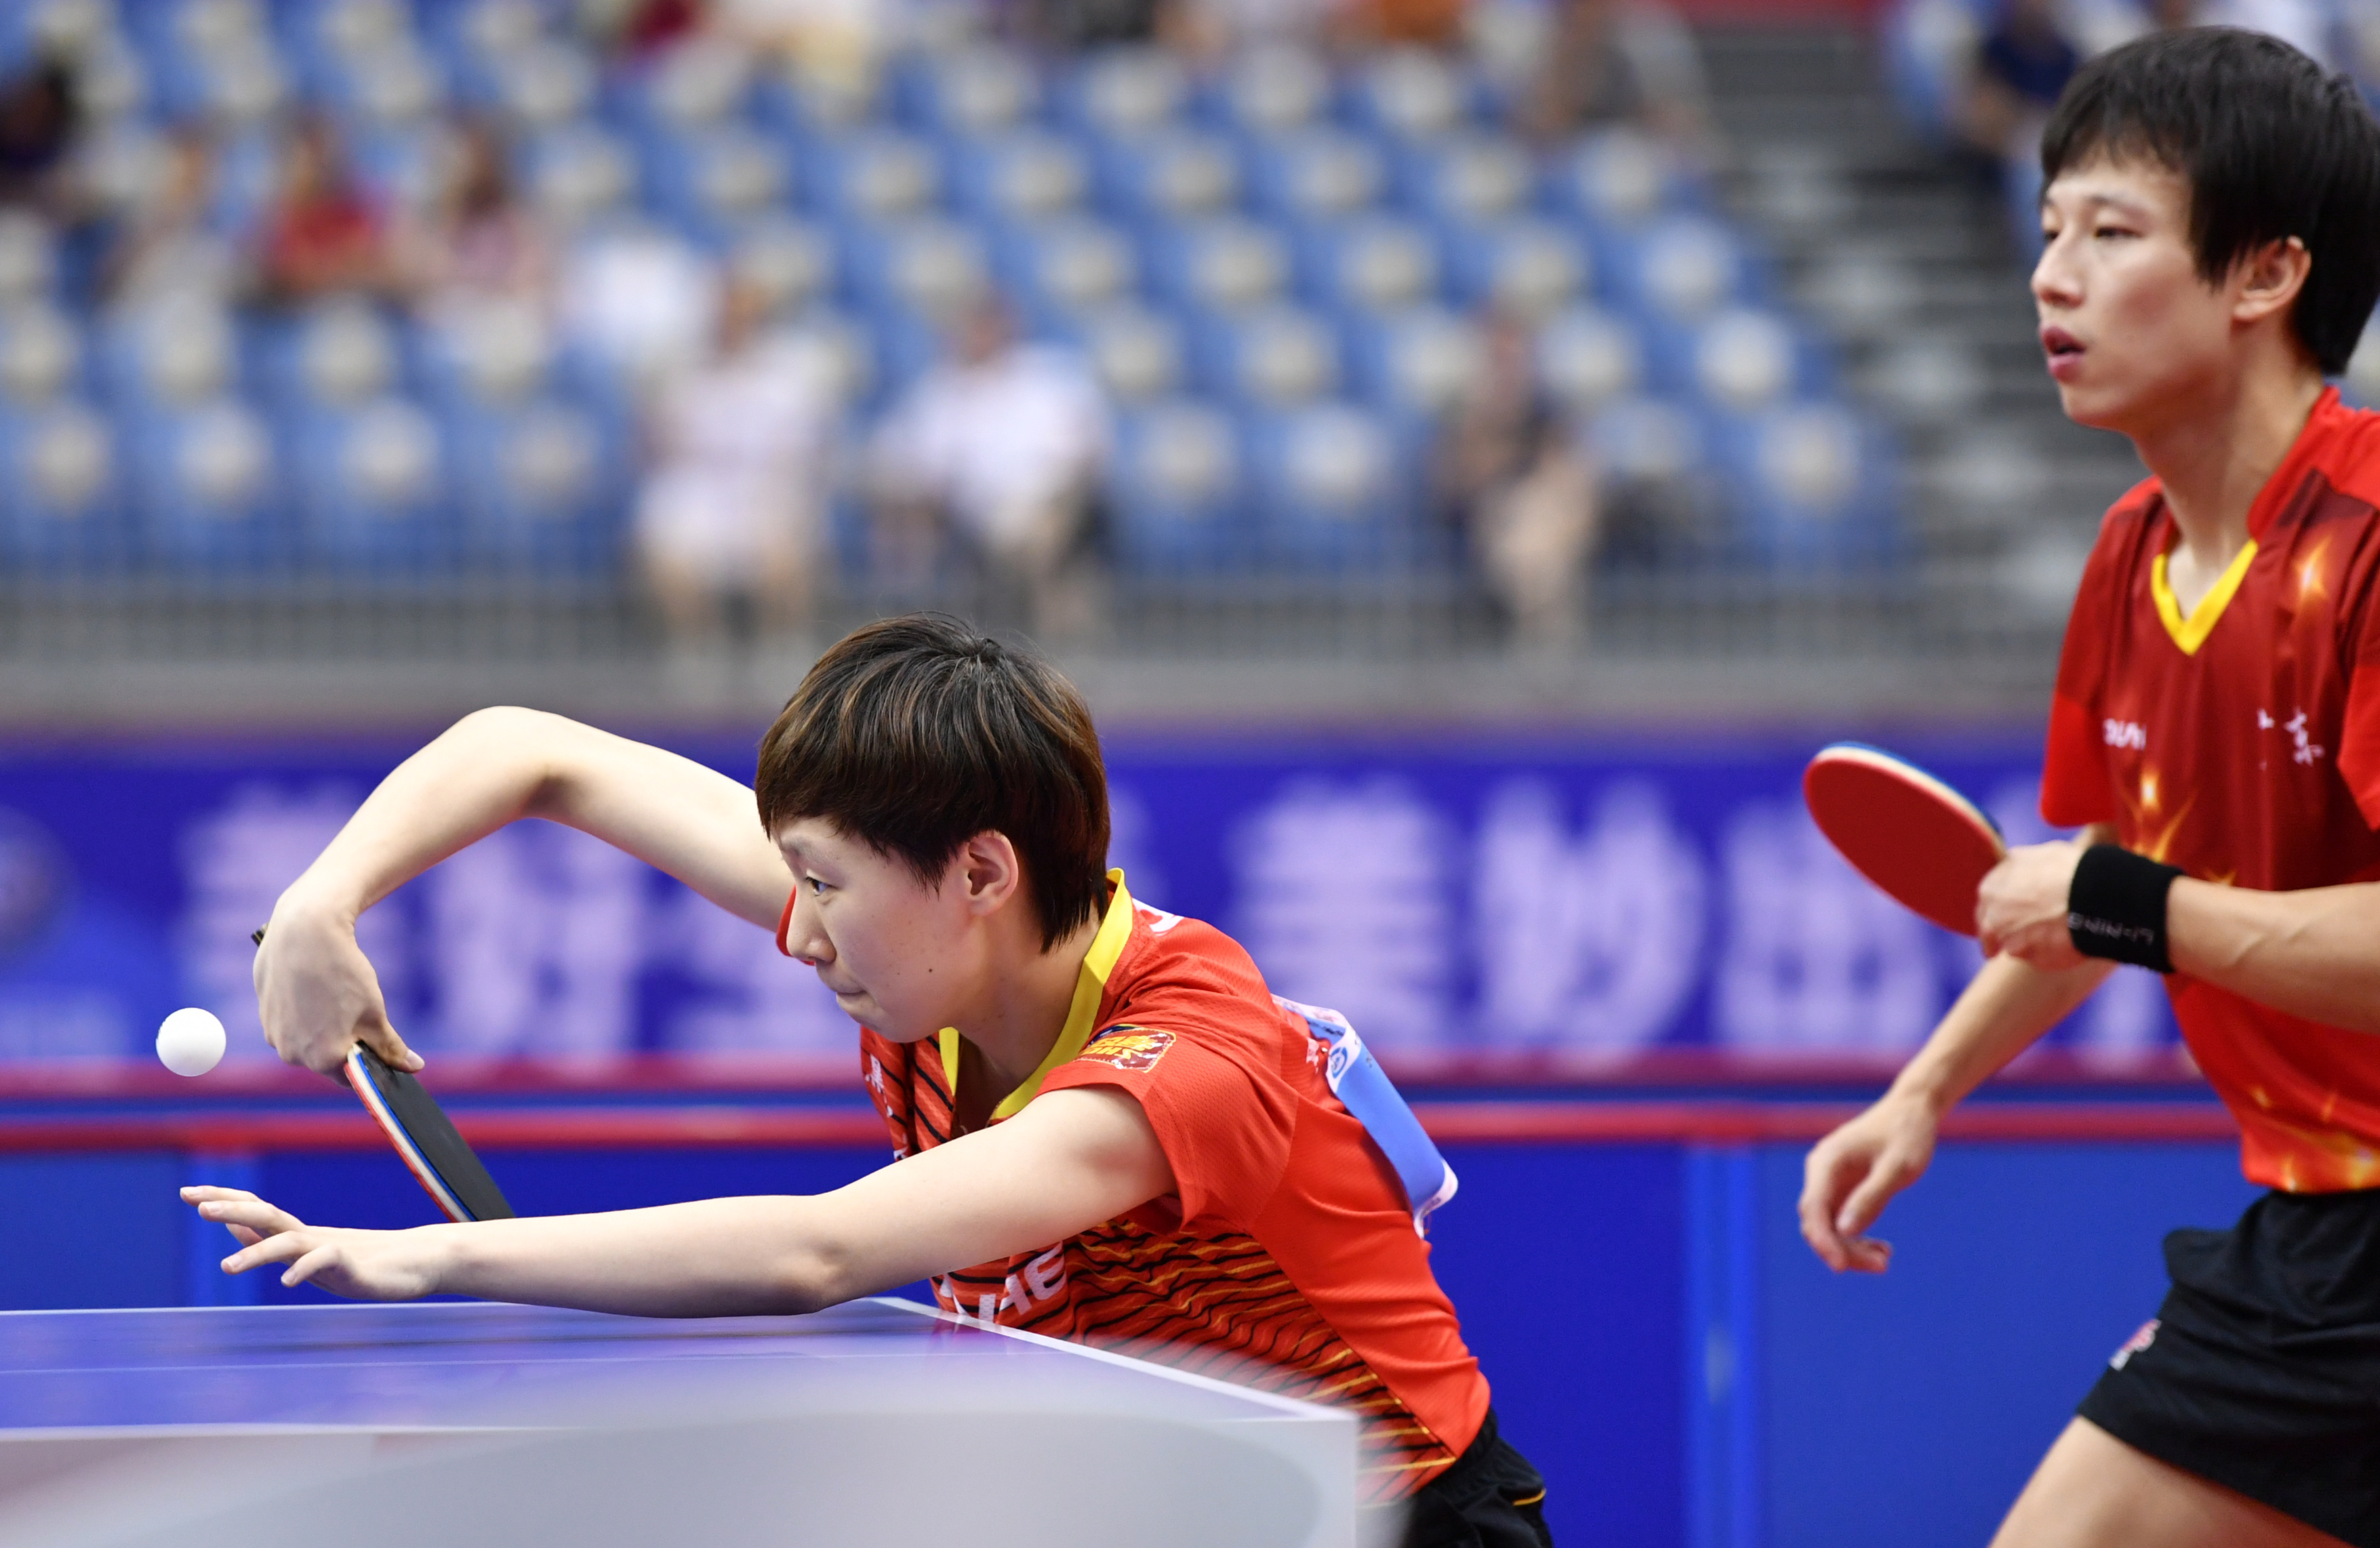 当日,在天津武清举行的2019年全国乒乓球锦标赛混合双打决赛中,林高远